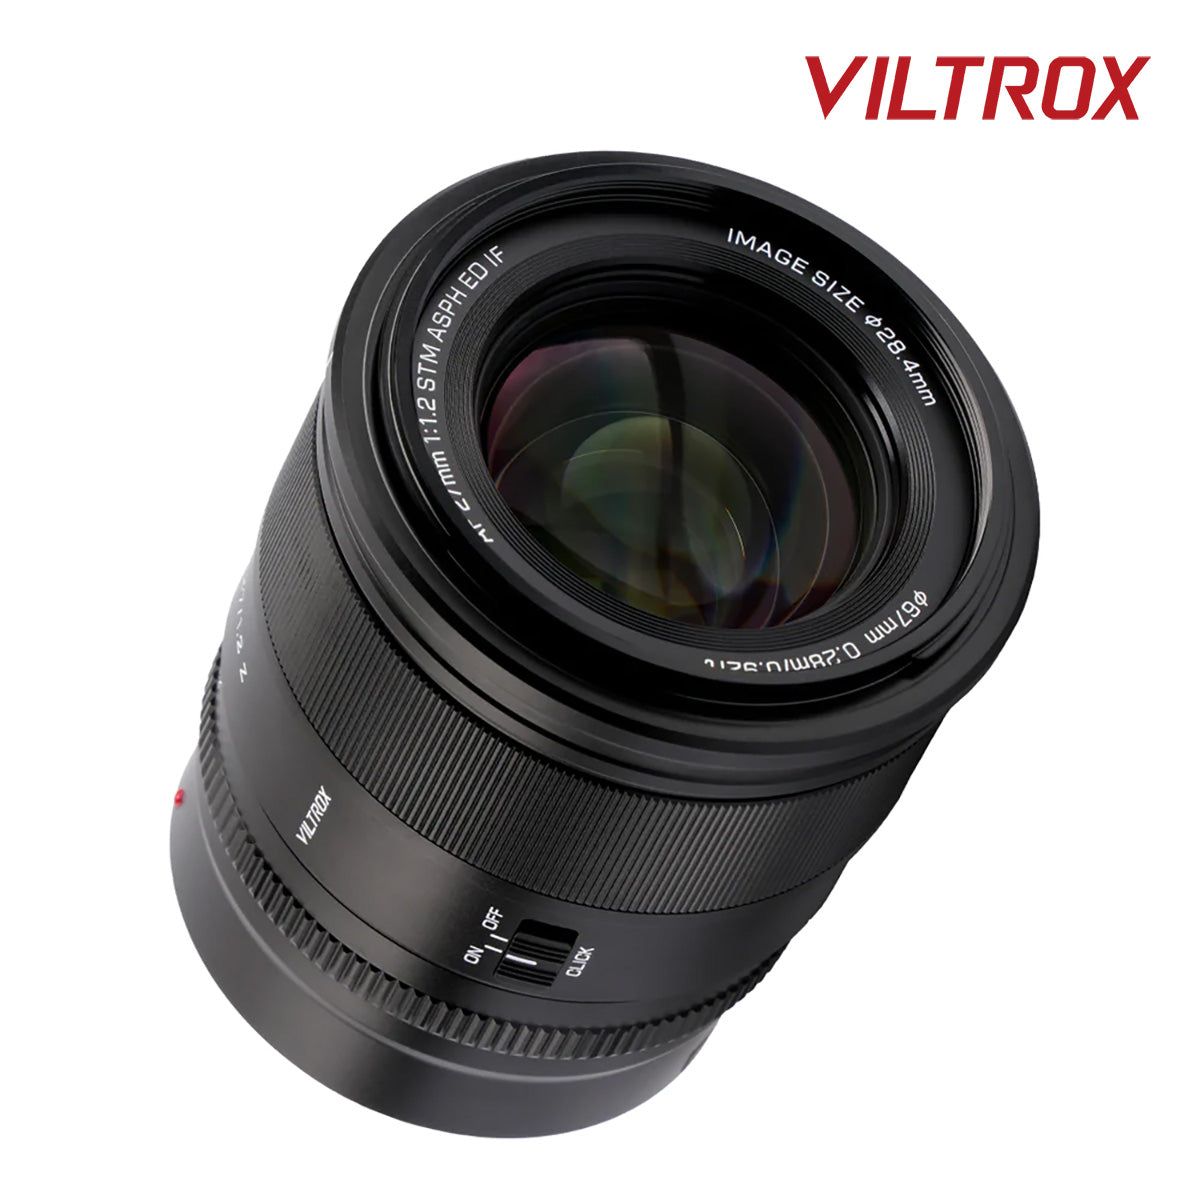 Viltrox Auto Focus 27mm f1.2Z PRO Prime Lens for Nikon APS-C Z-mount